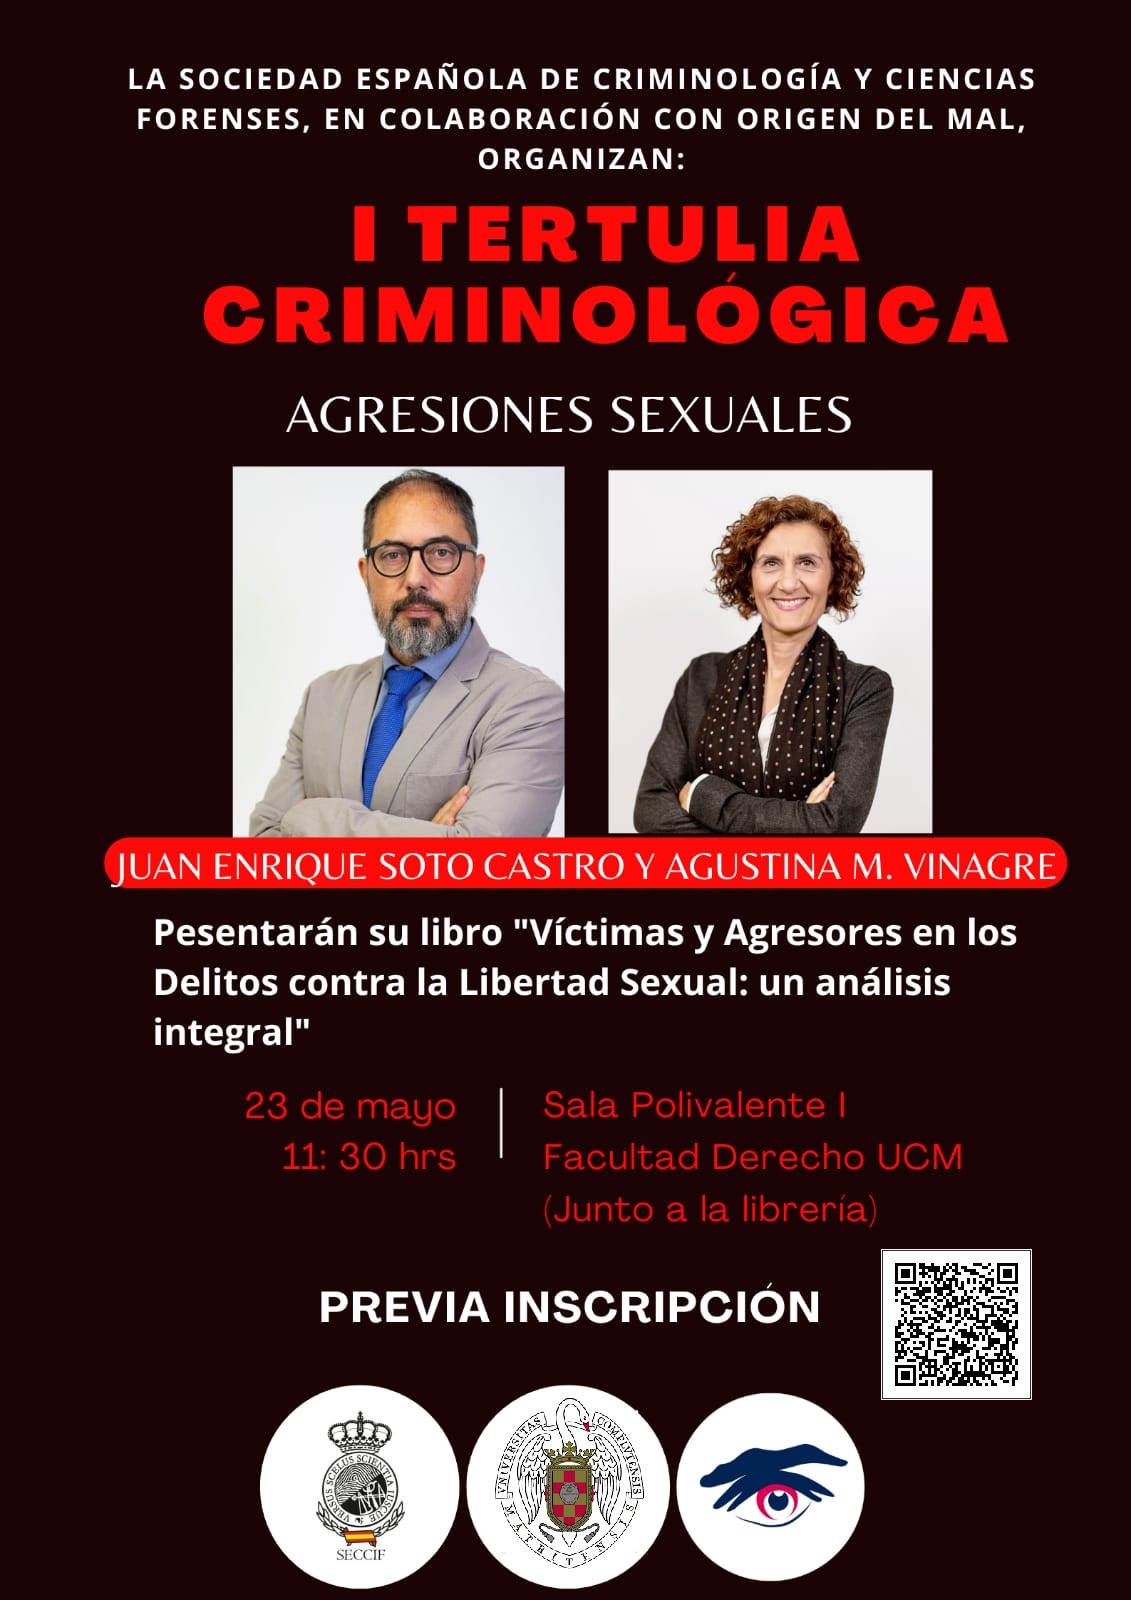 I Tertulia Criminológica: Agresiones sexuales (23 mayo, Sala Polivalente I) 